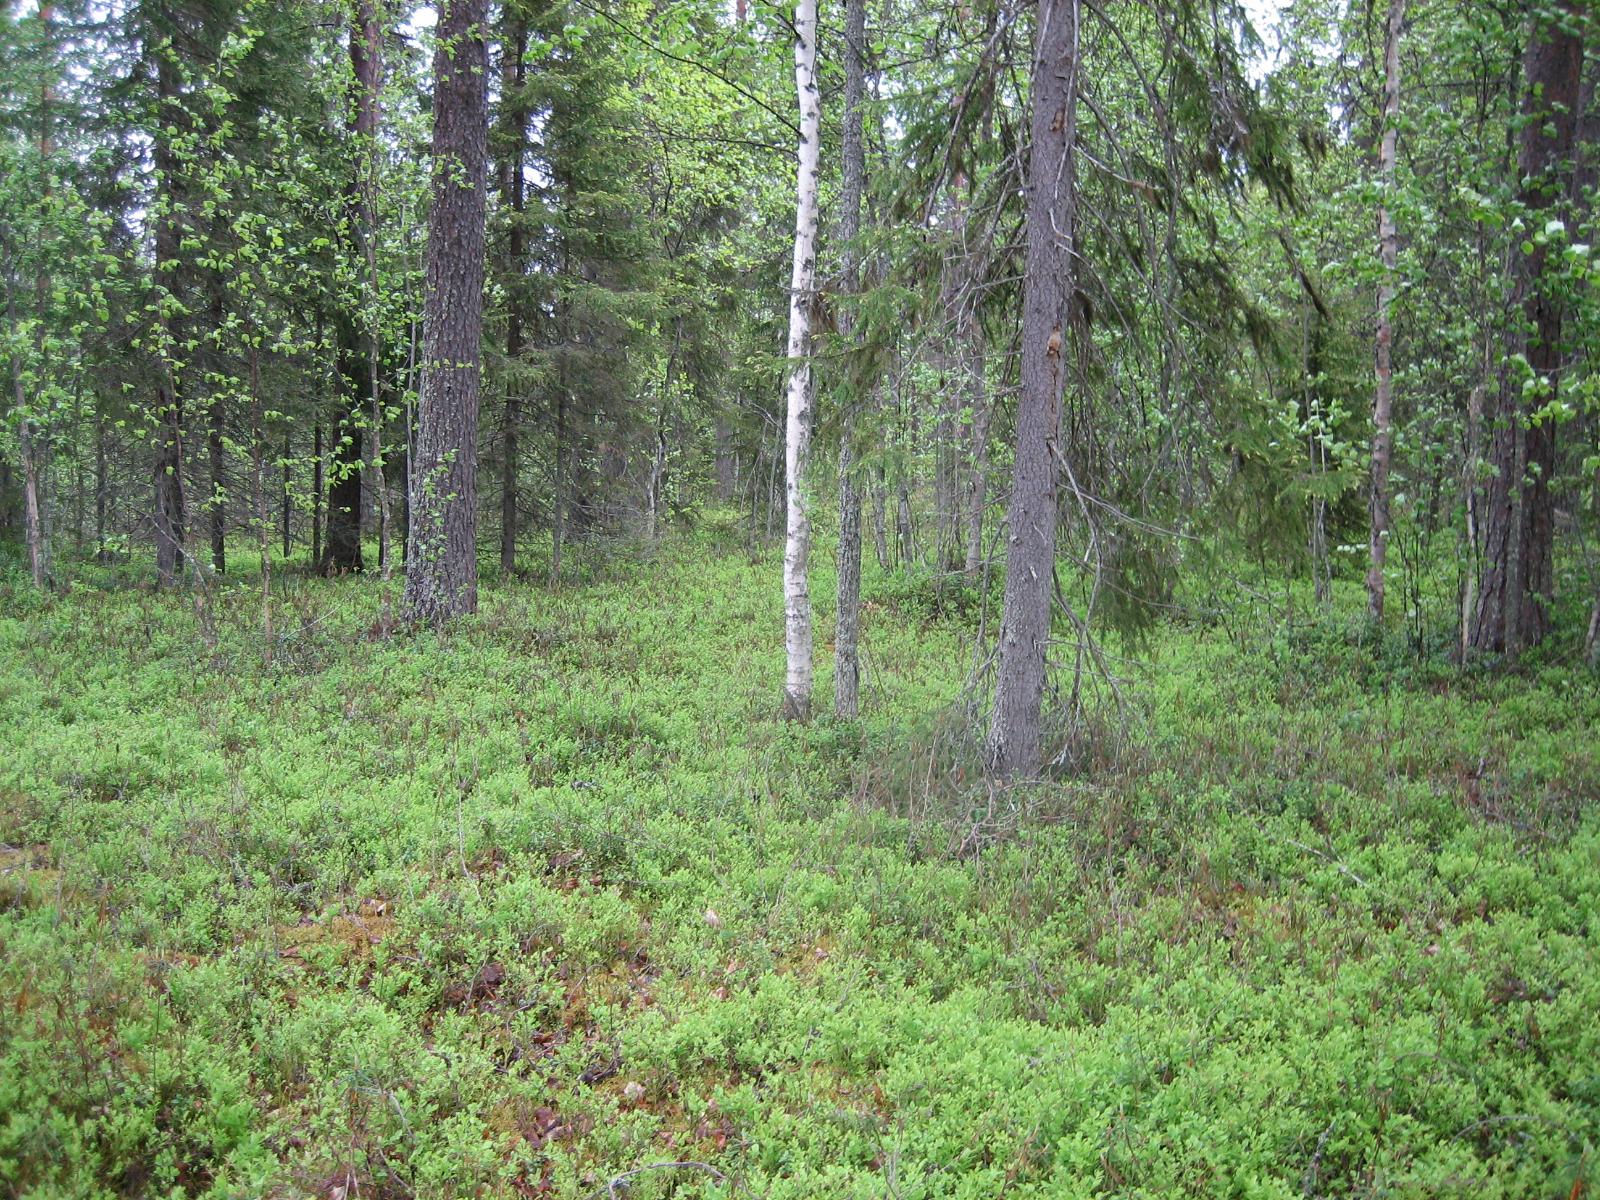 Kesäisessä metsässä kasvaa koivuja ja kuusia. Aluskasvillisuutena on mustikanvarpuja.